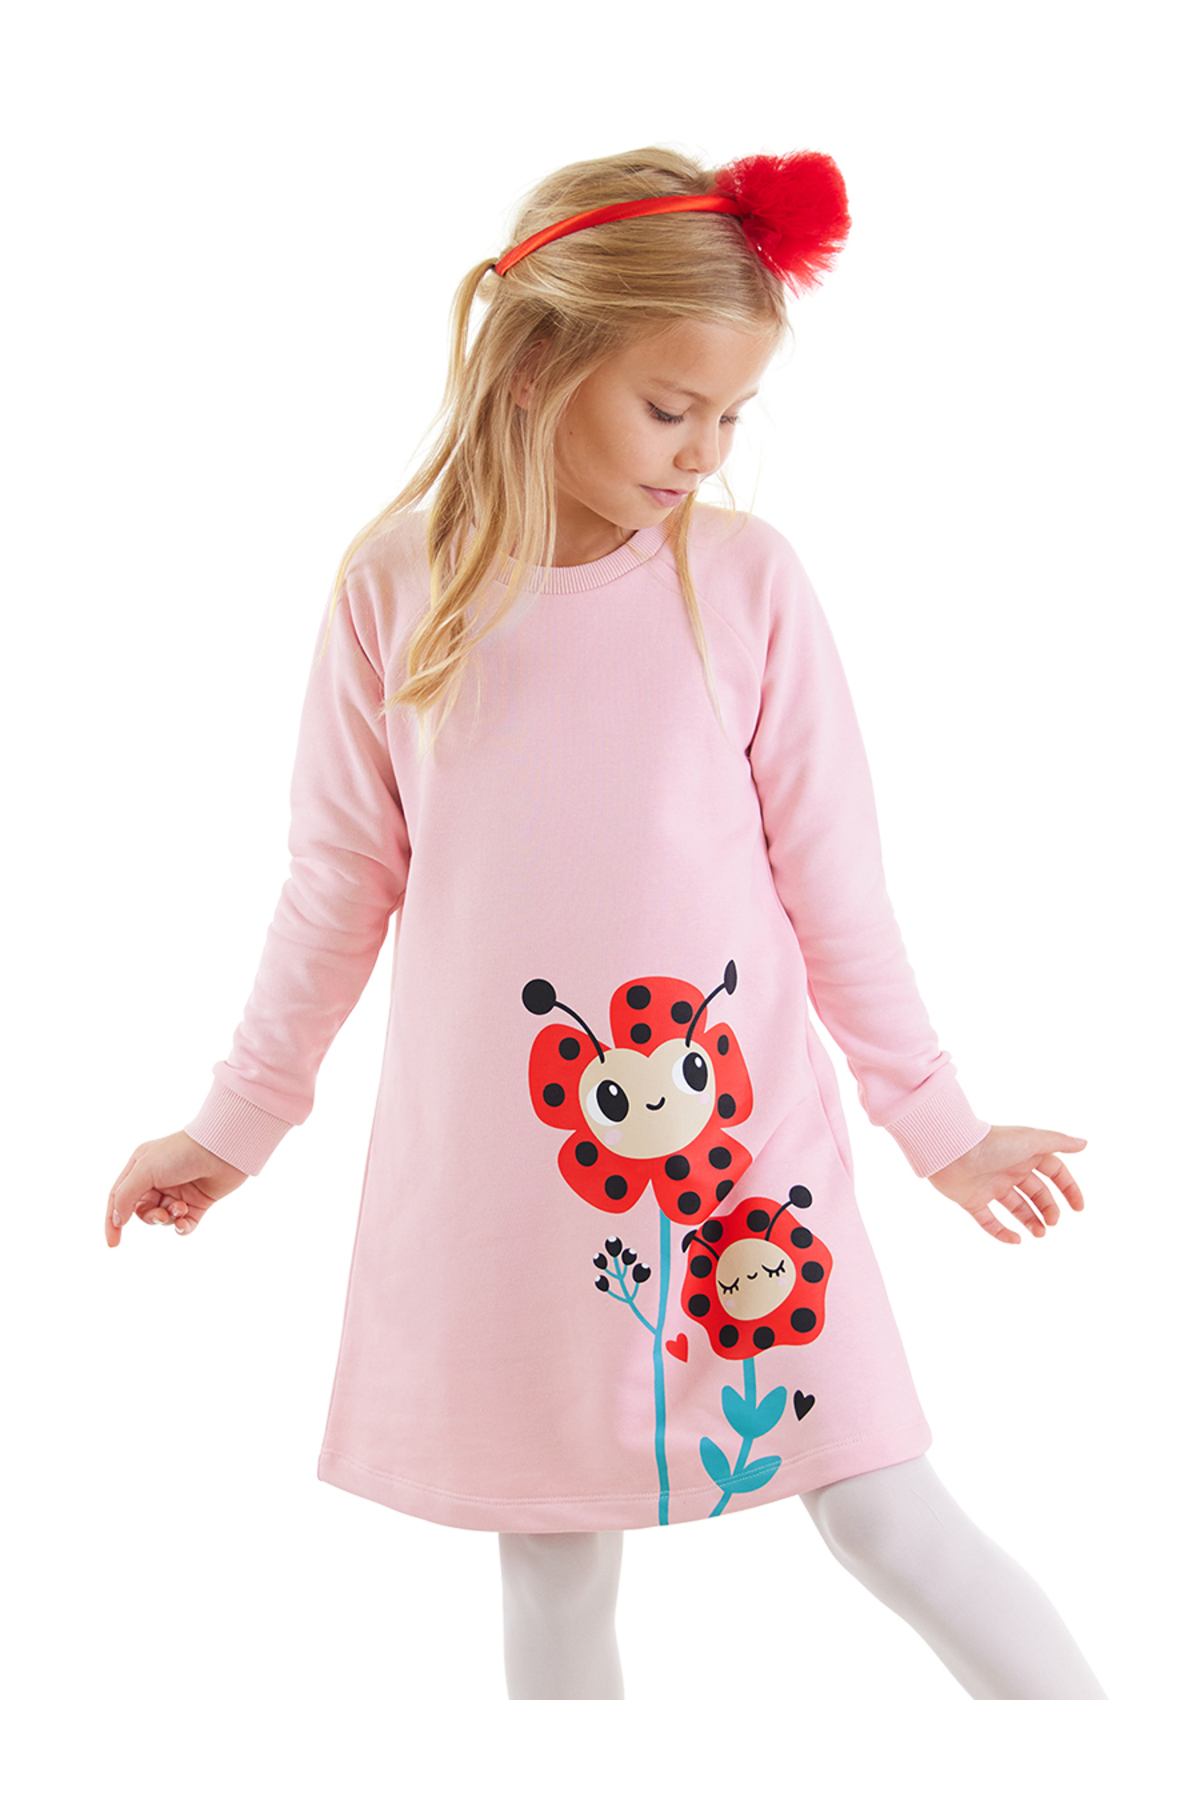 Levně Denokids Ladybug Flowers Girls' Dress